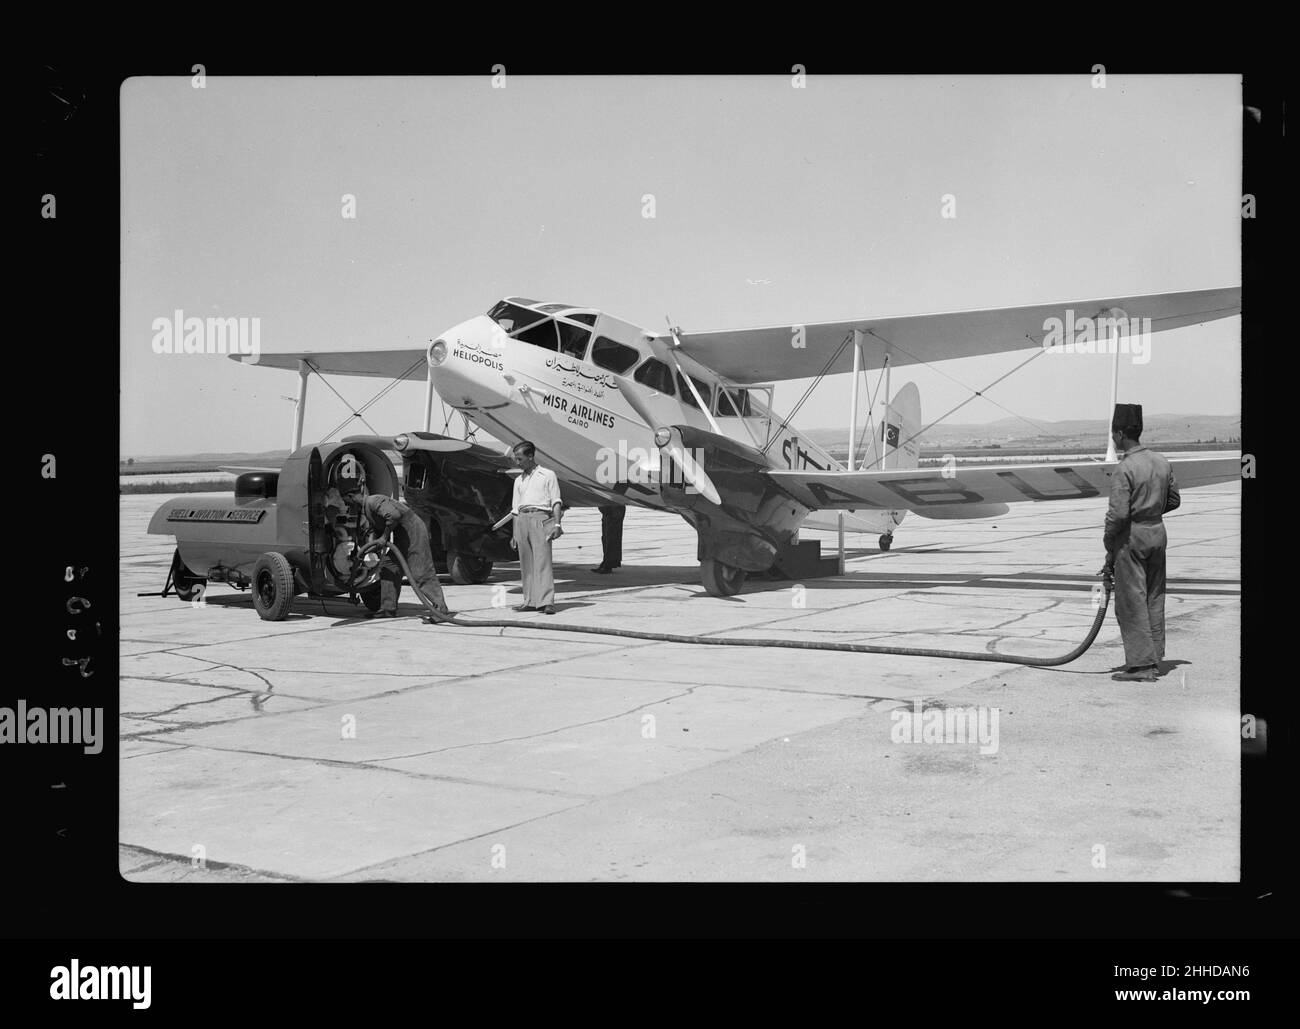 Aeropuerto de Lydda. Misr avión repostando LOC matpc.18471 por Bain News Foto de stock